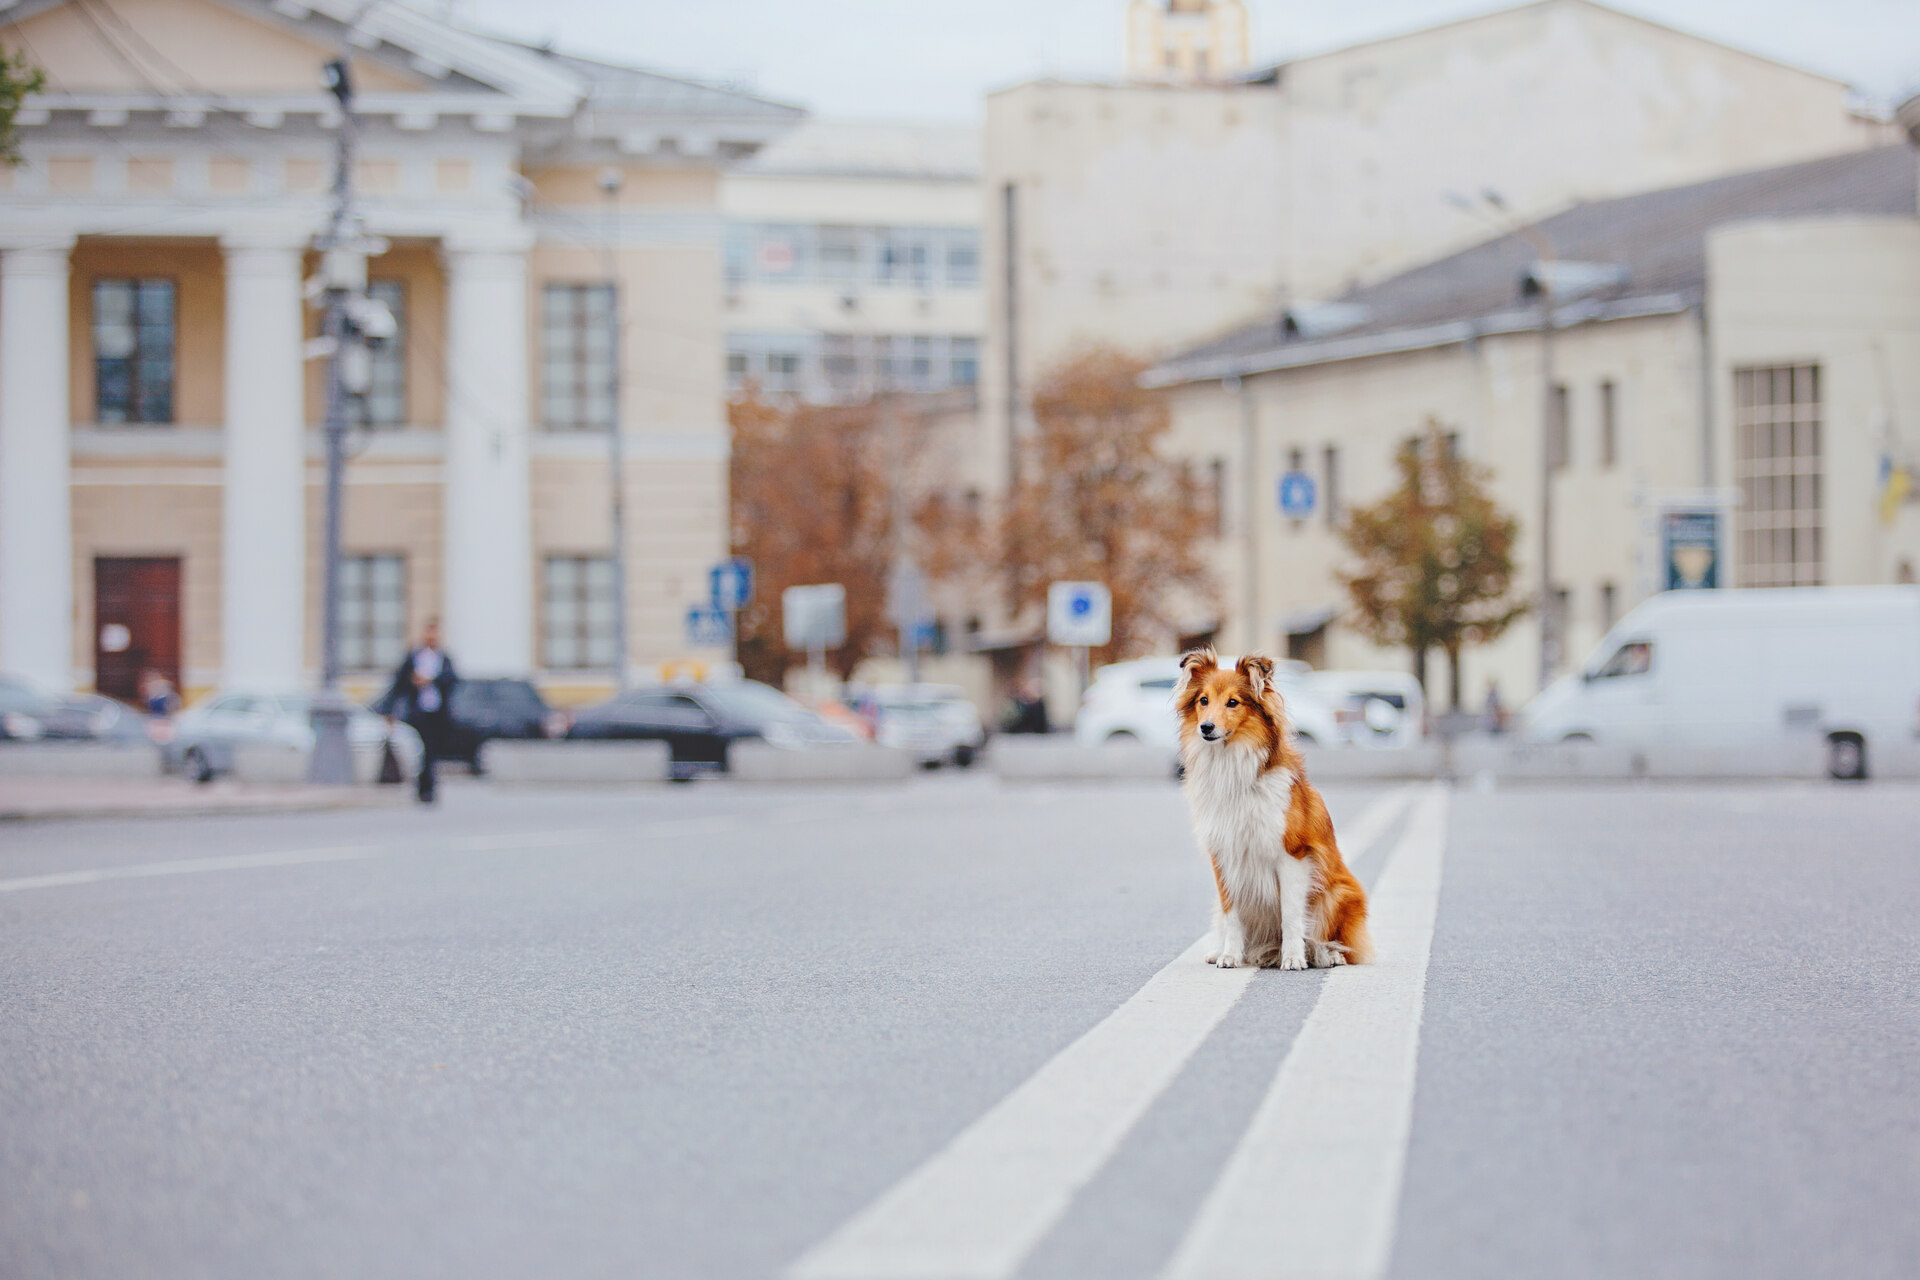 A dog sitting on an empty street